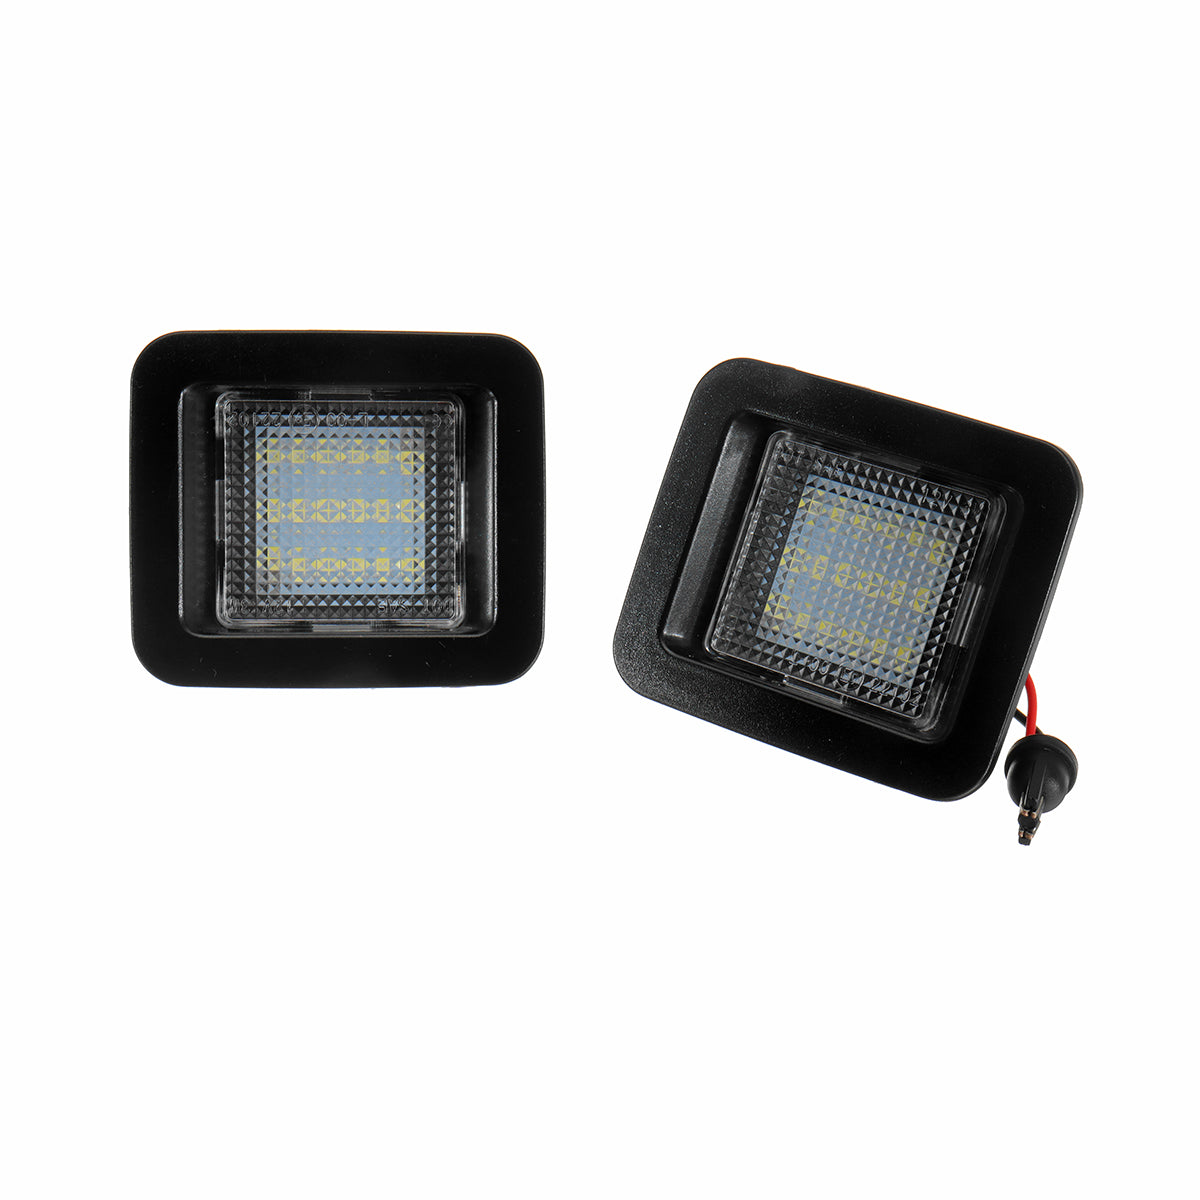 Black 2PCS LED License Plate Lights Rear Bumper Lamp Error Free for Ford F-150 Raptor 2015-up